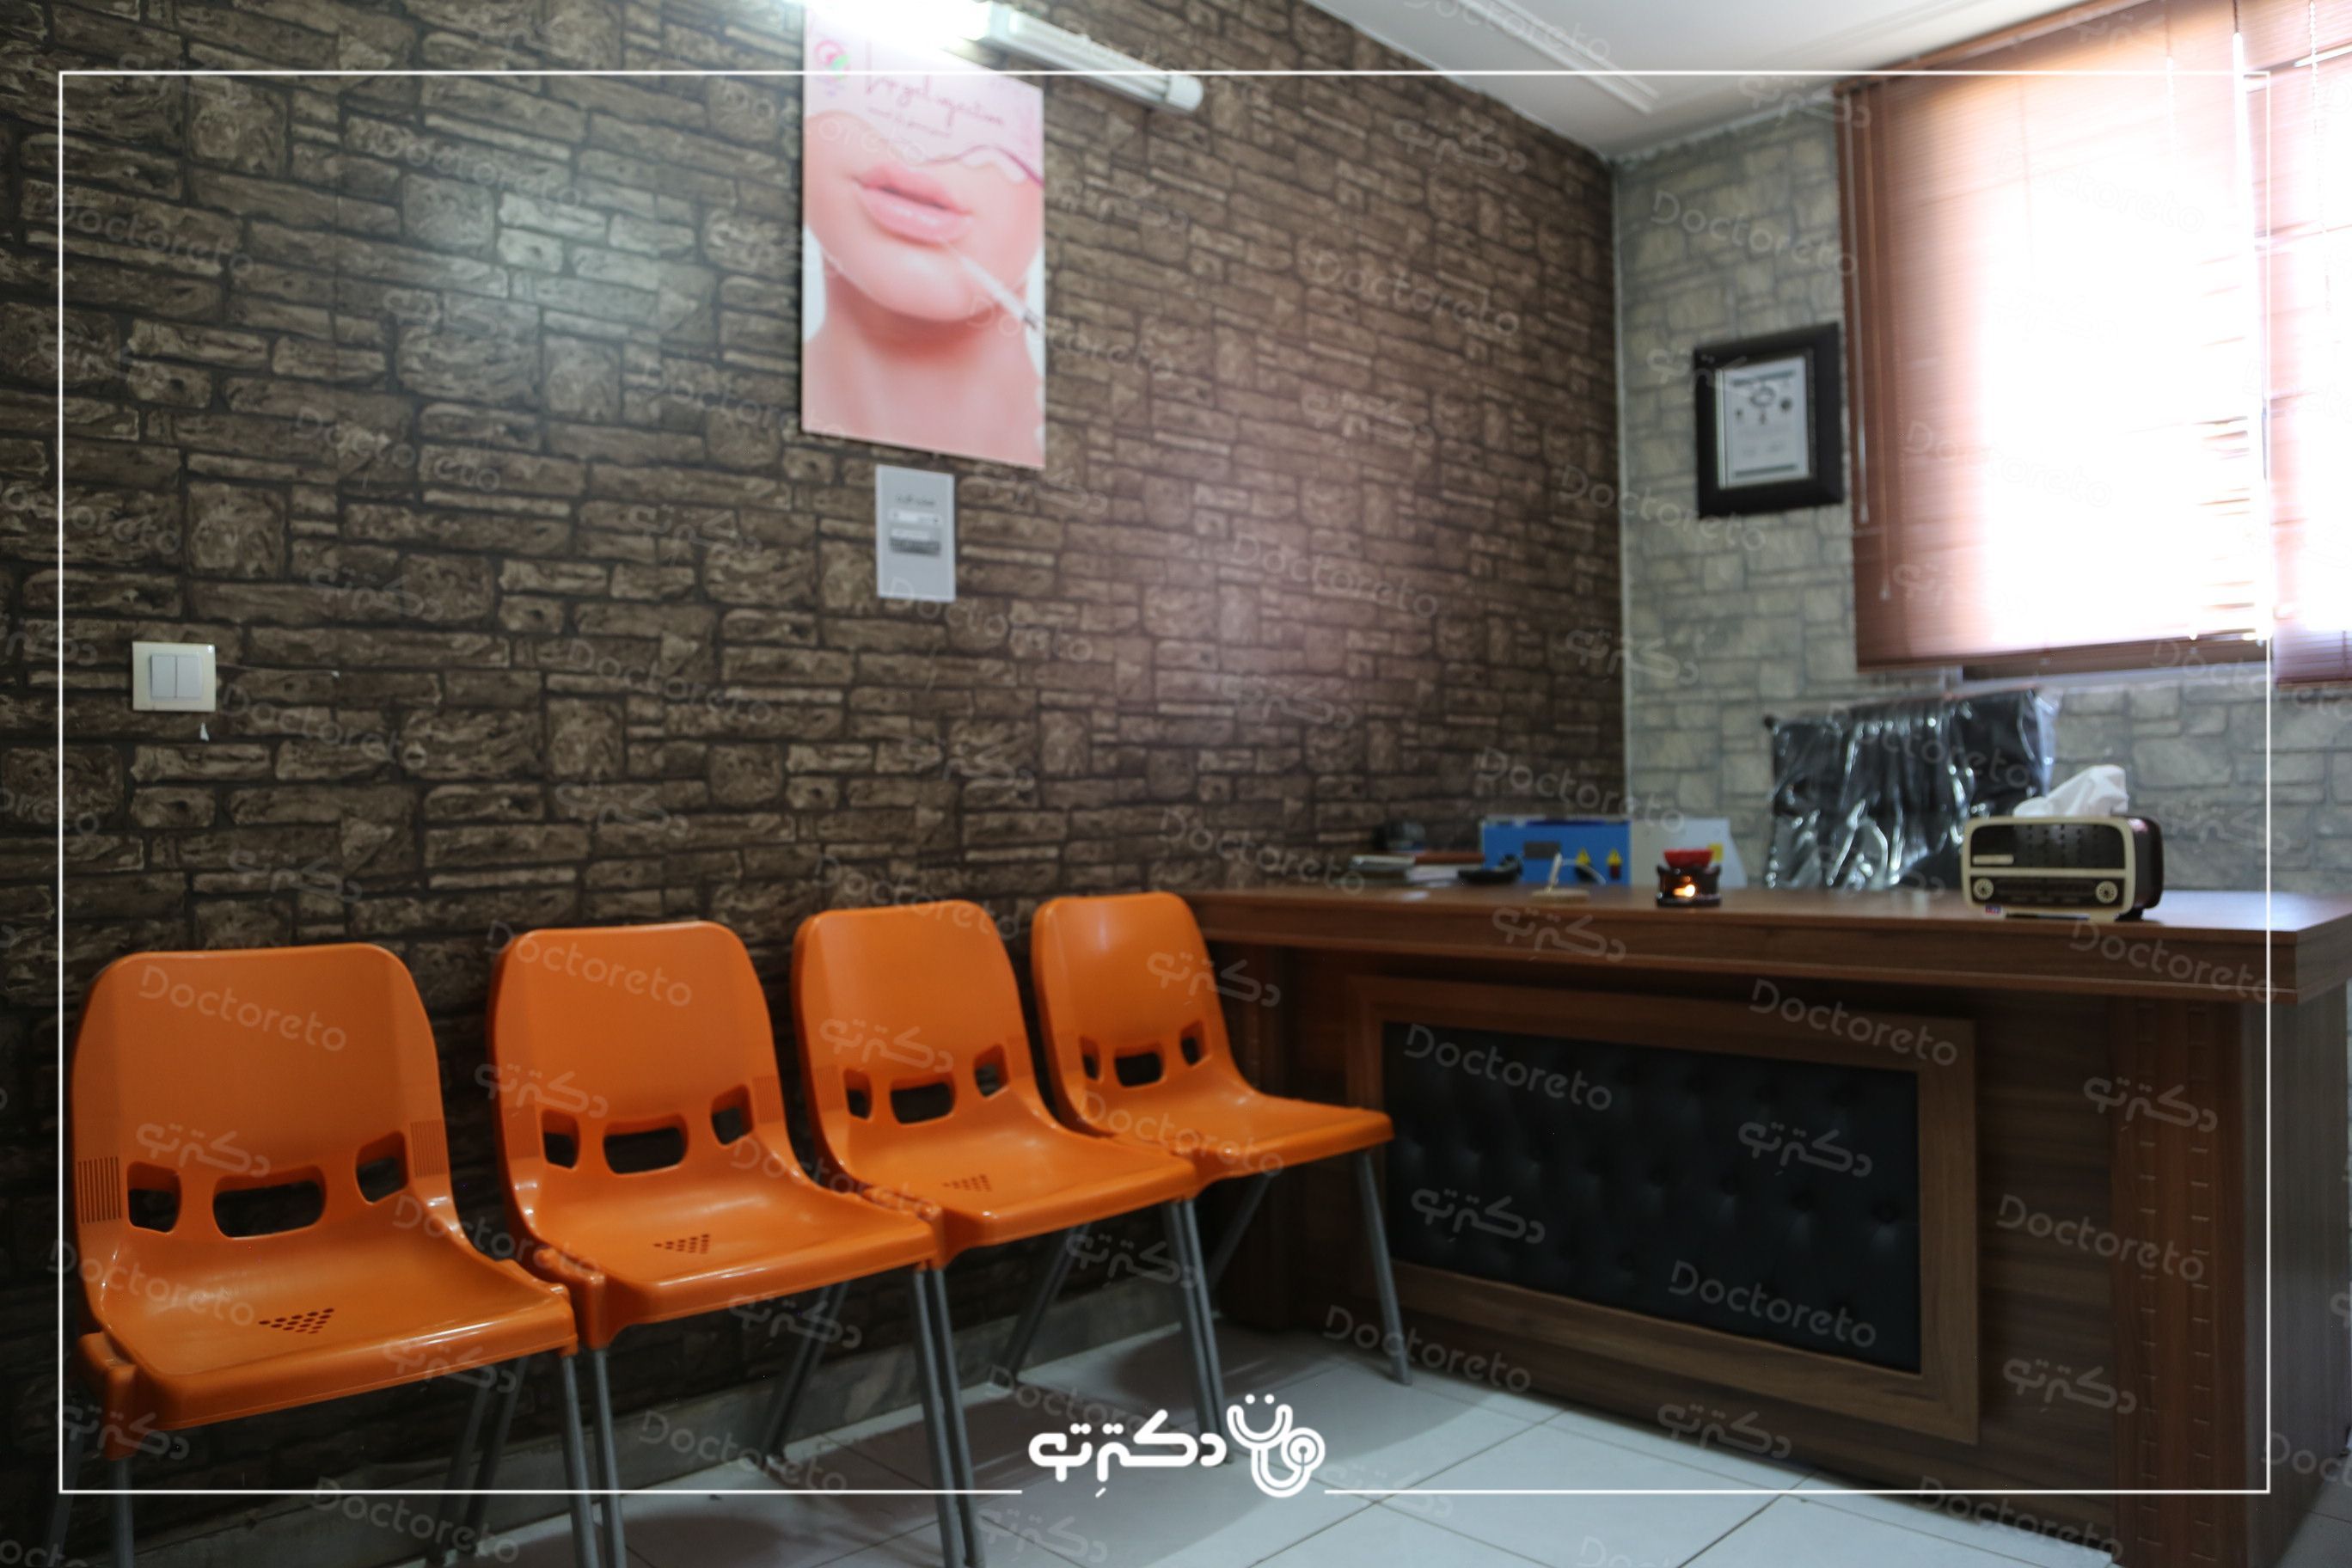 جوانسازی و کاهش لک صورت به روش تزریق مزوتراپی با برند آروما ایتالیایی (1cc) دکتر رضا ذاکری در اصفهان 2